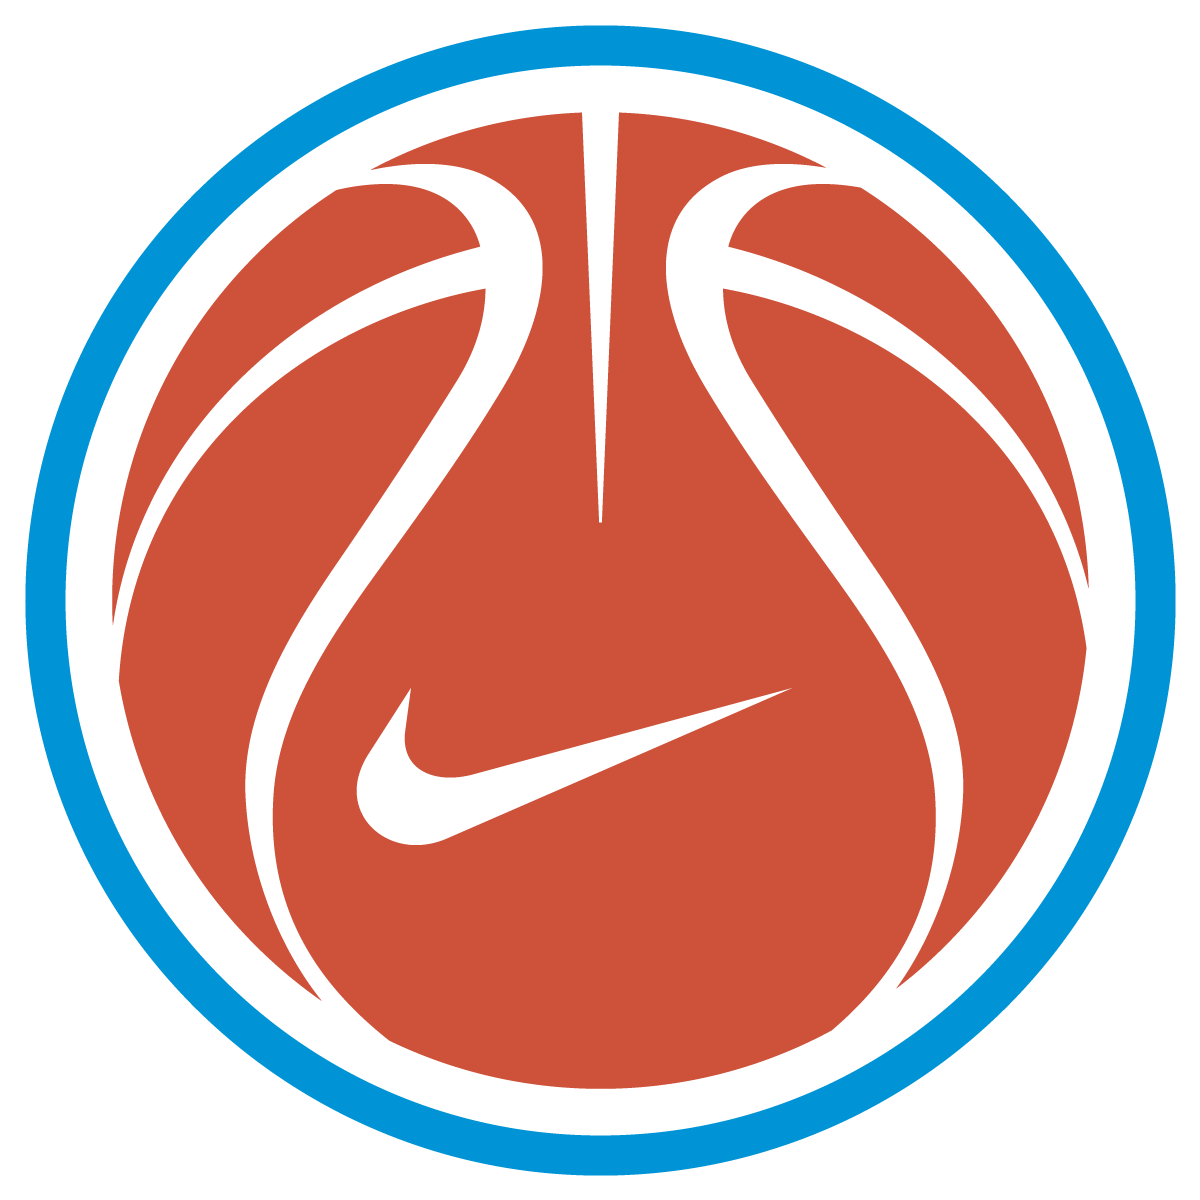 Basketball Vector Logo - Nike Basketball Logo Vector | Free Vector Silhouette Graphics AI EPS ...